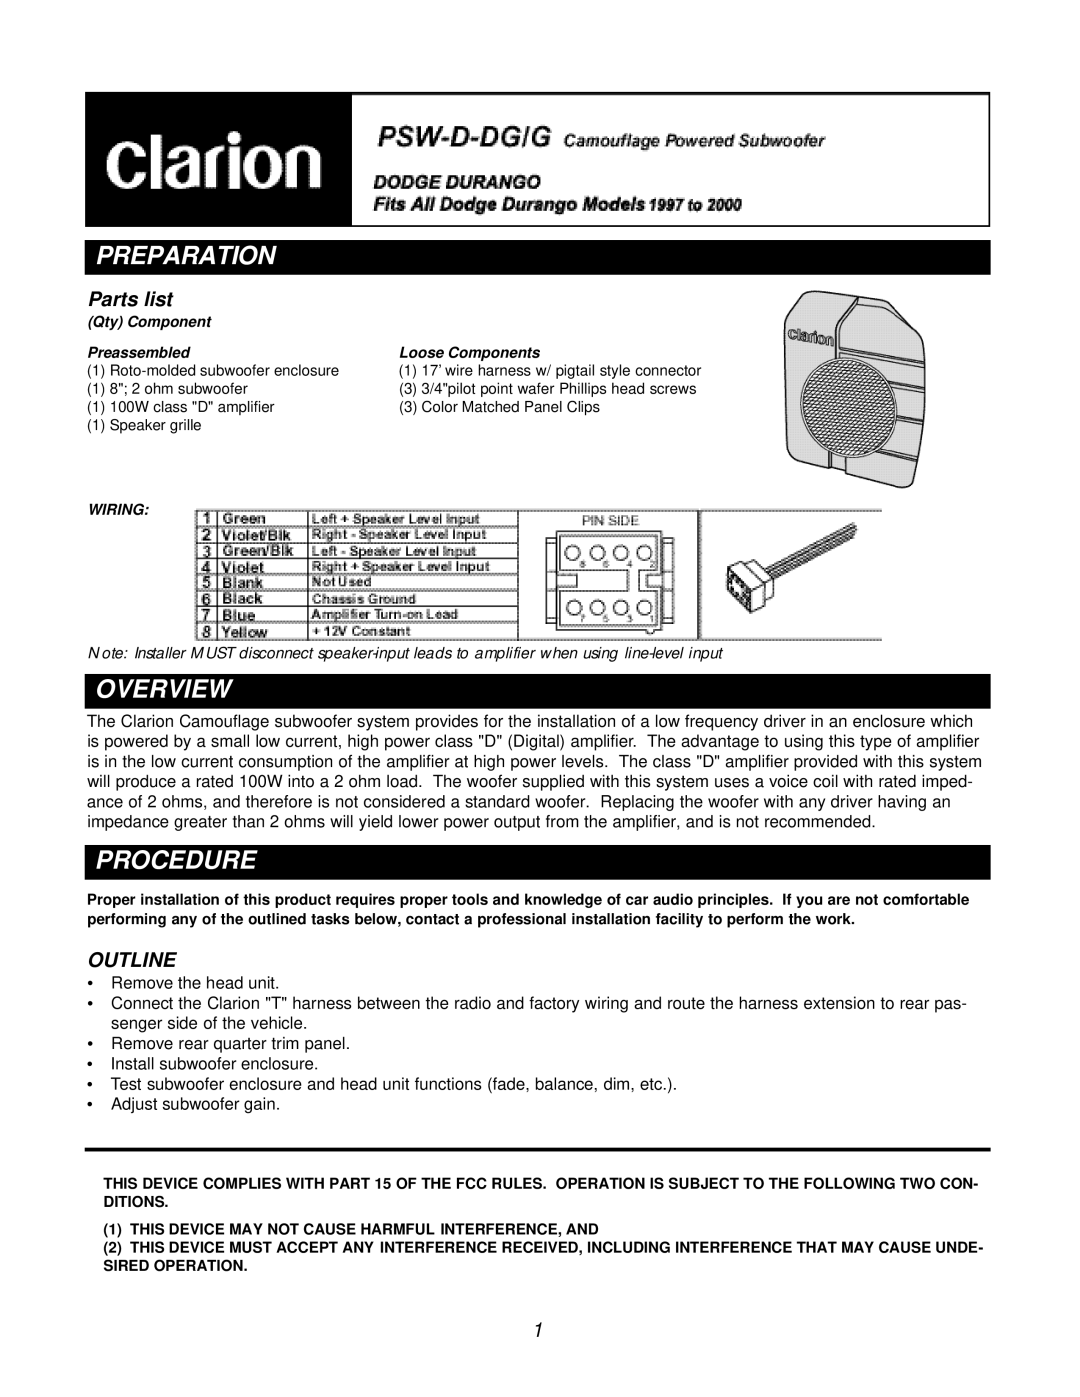 Clarion PSW-D-DGIG manual Preparation, Overview, Procedure, Parts list, Outline 